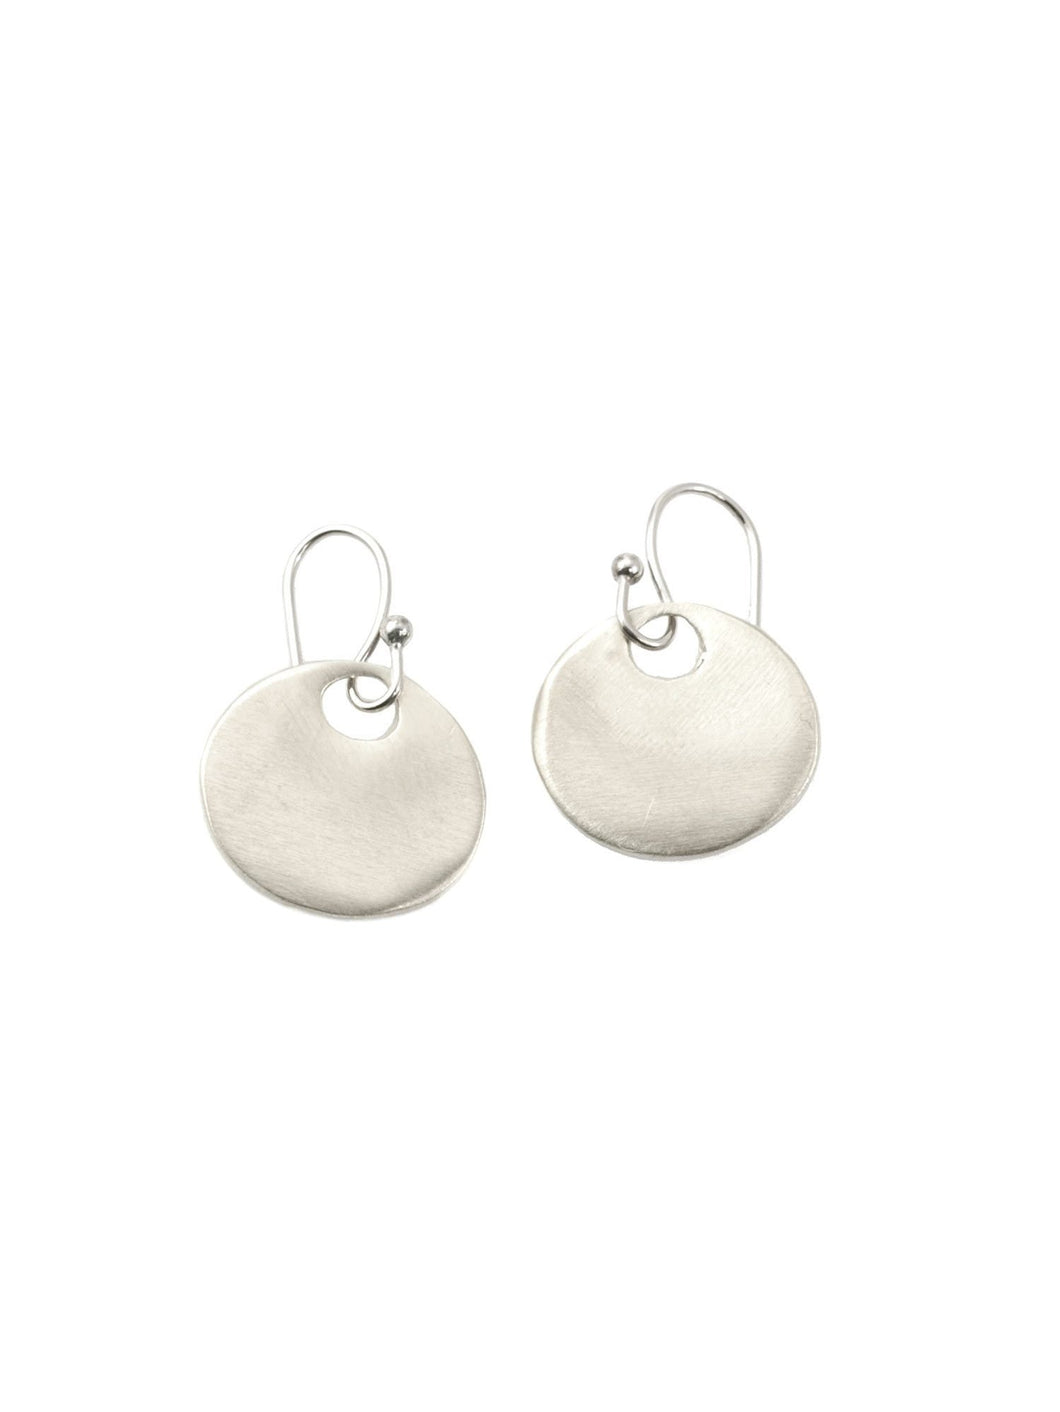 Medium Circle Earrings - Silver